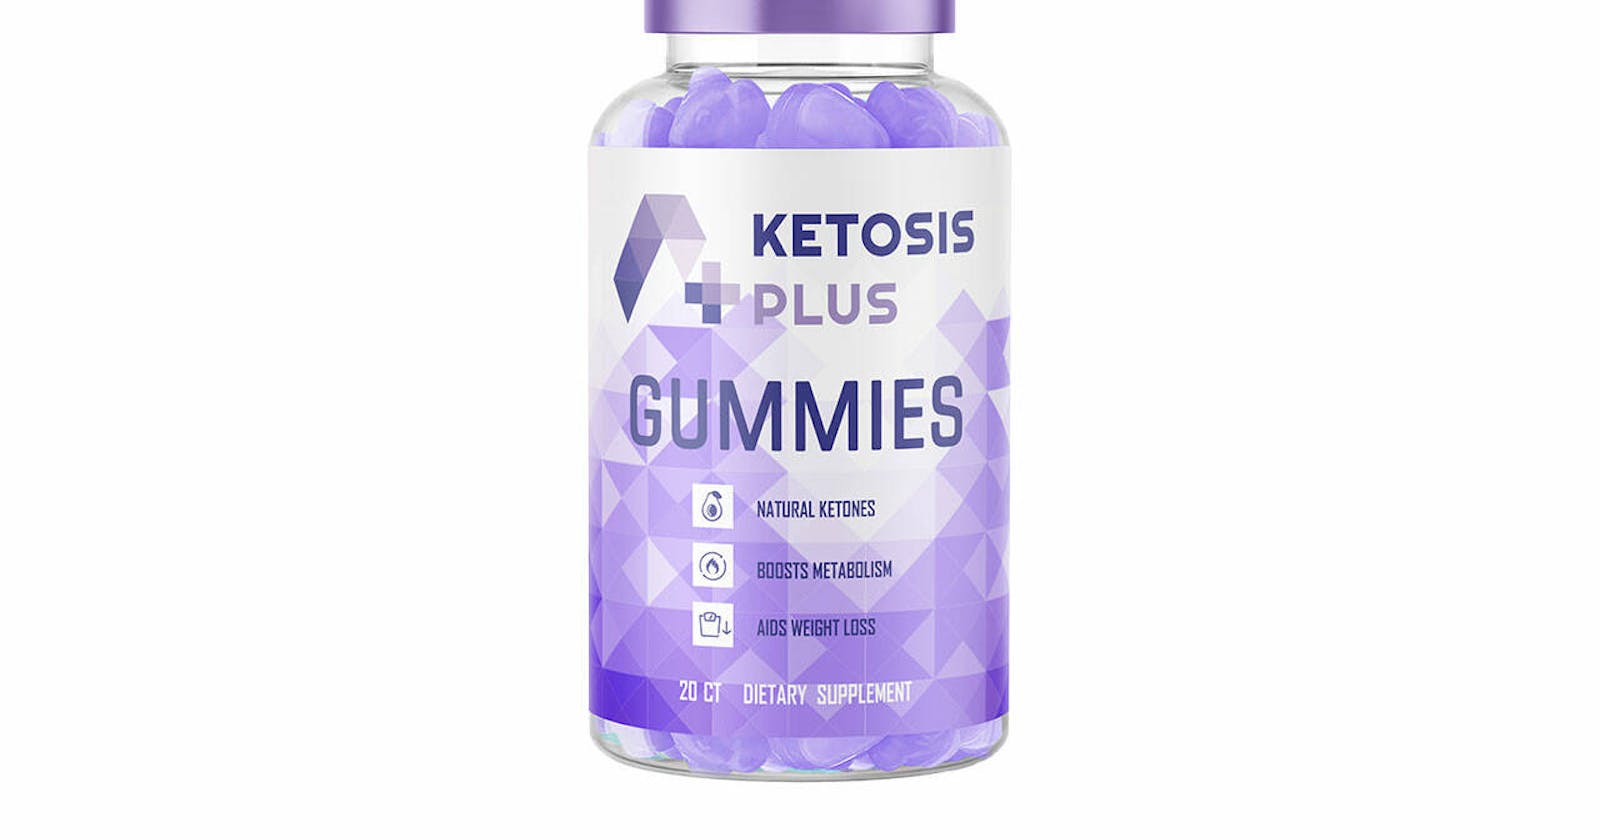 Ketosis Plus Gummies Ingredients | Scam Or Legit?